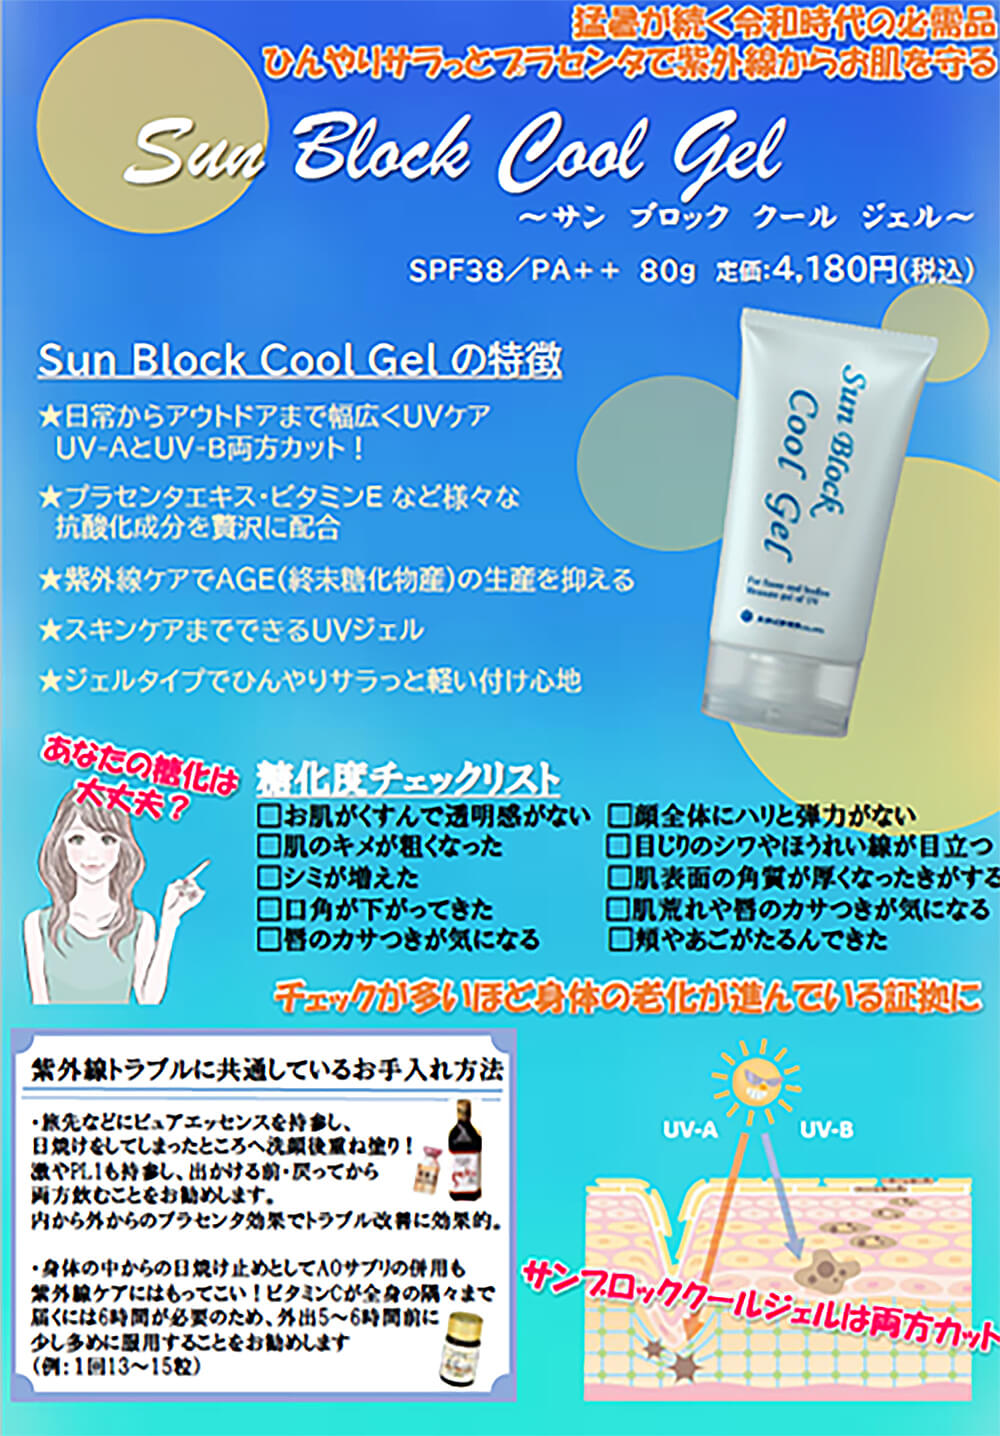 Sun Block Cool Gel